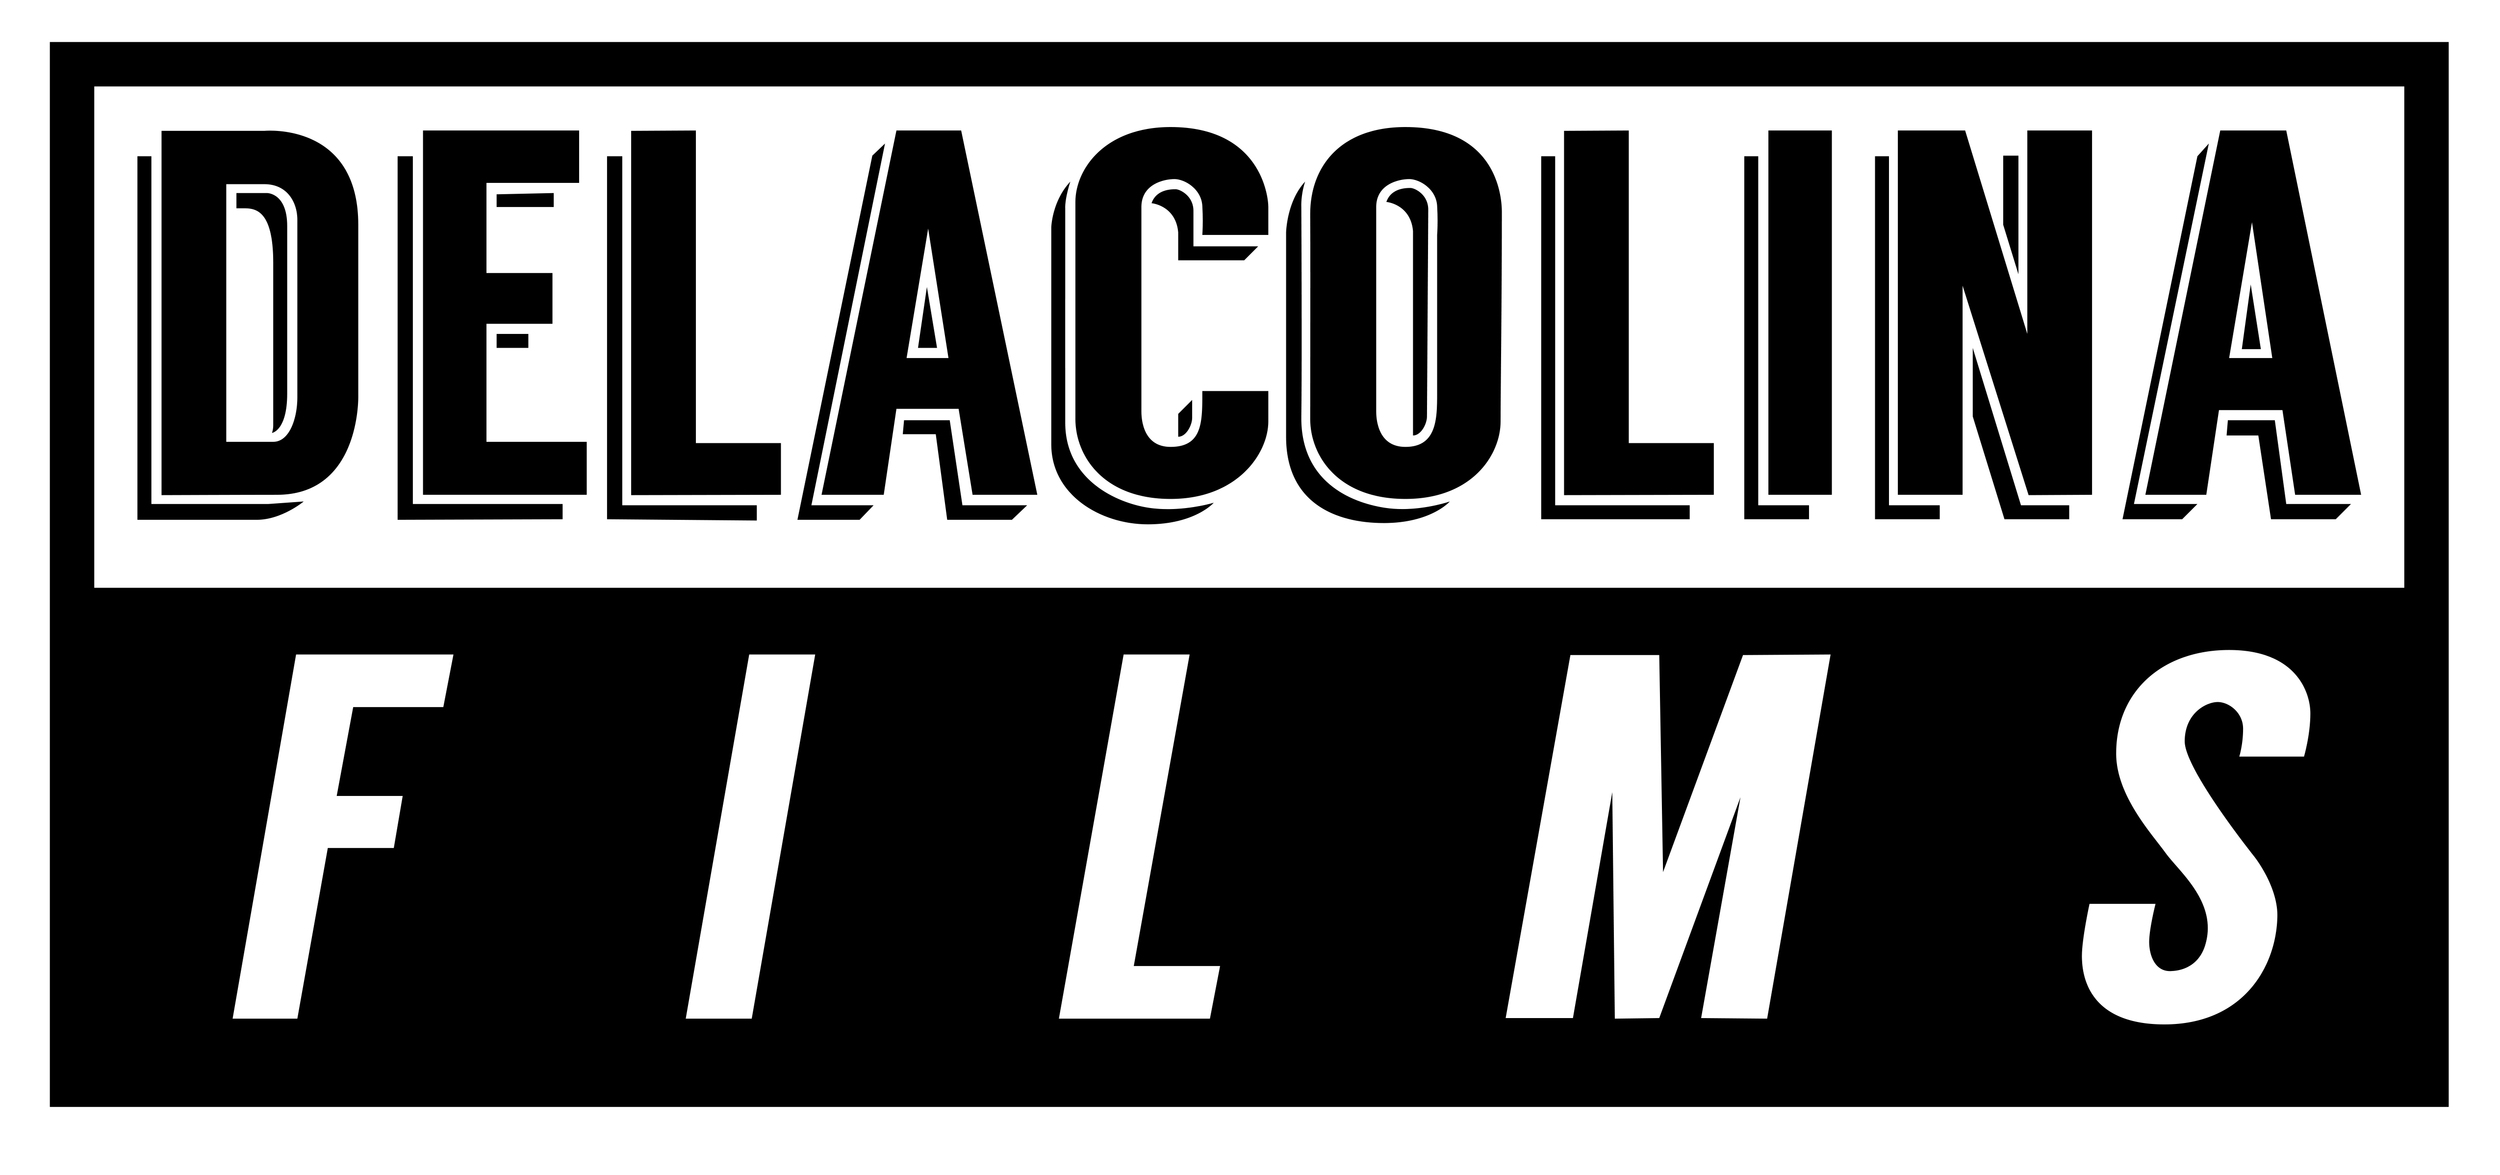 DELACOLINA FILMS